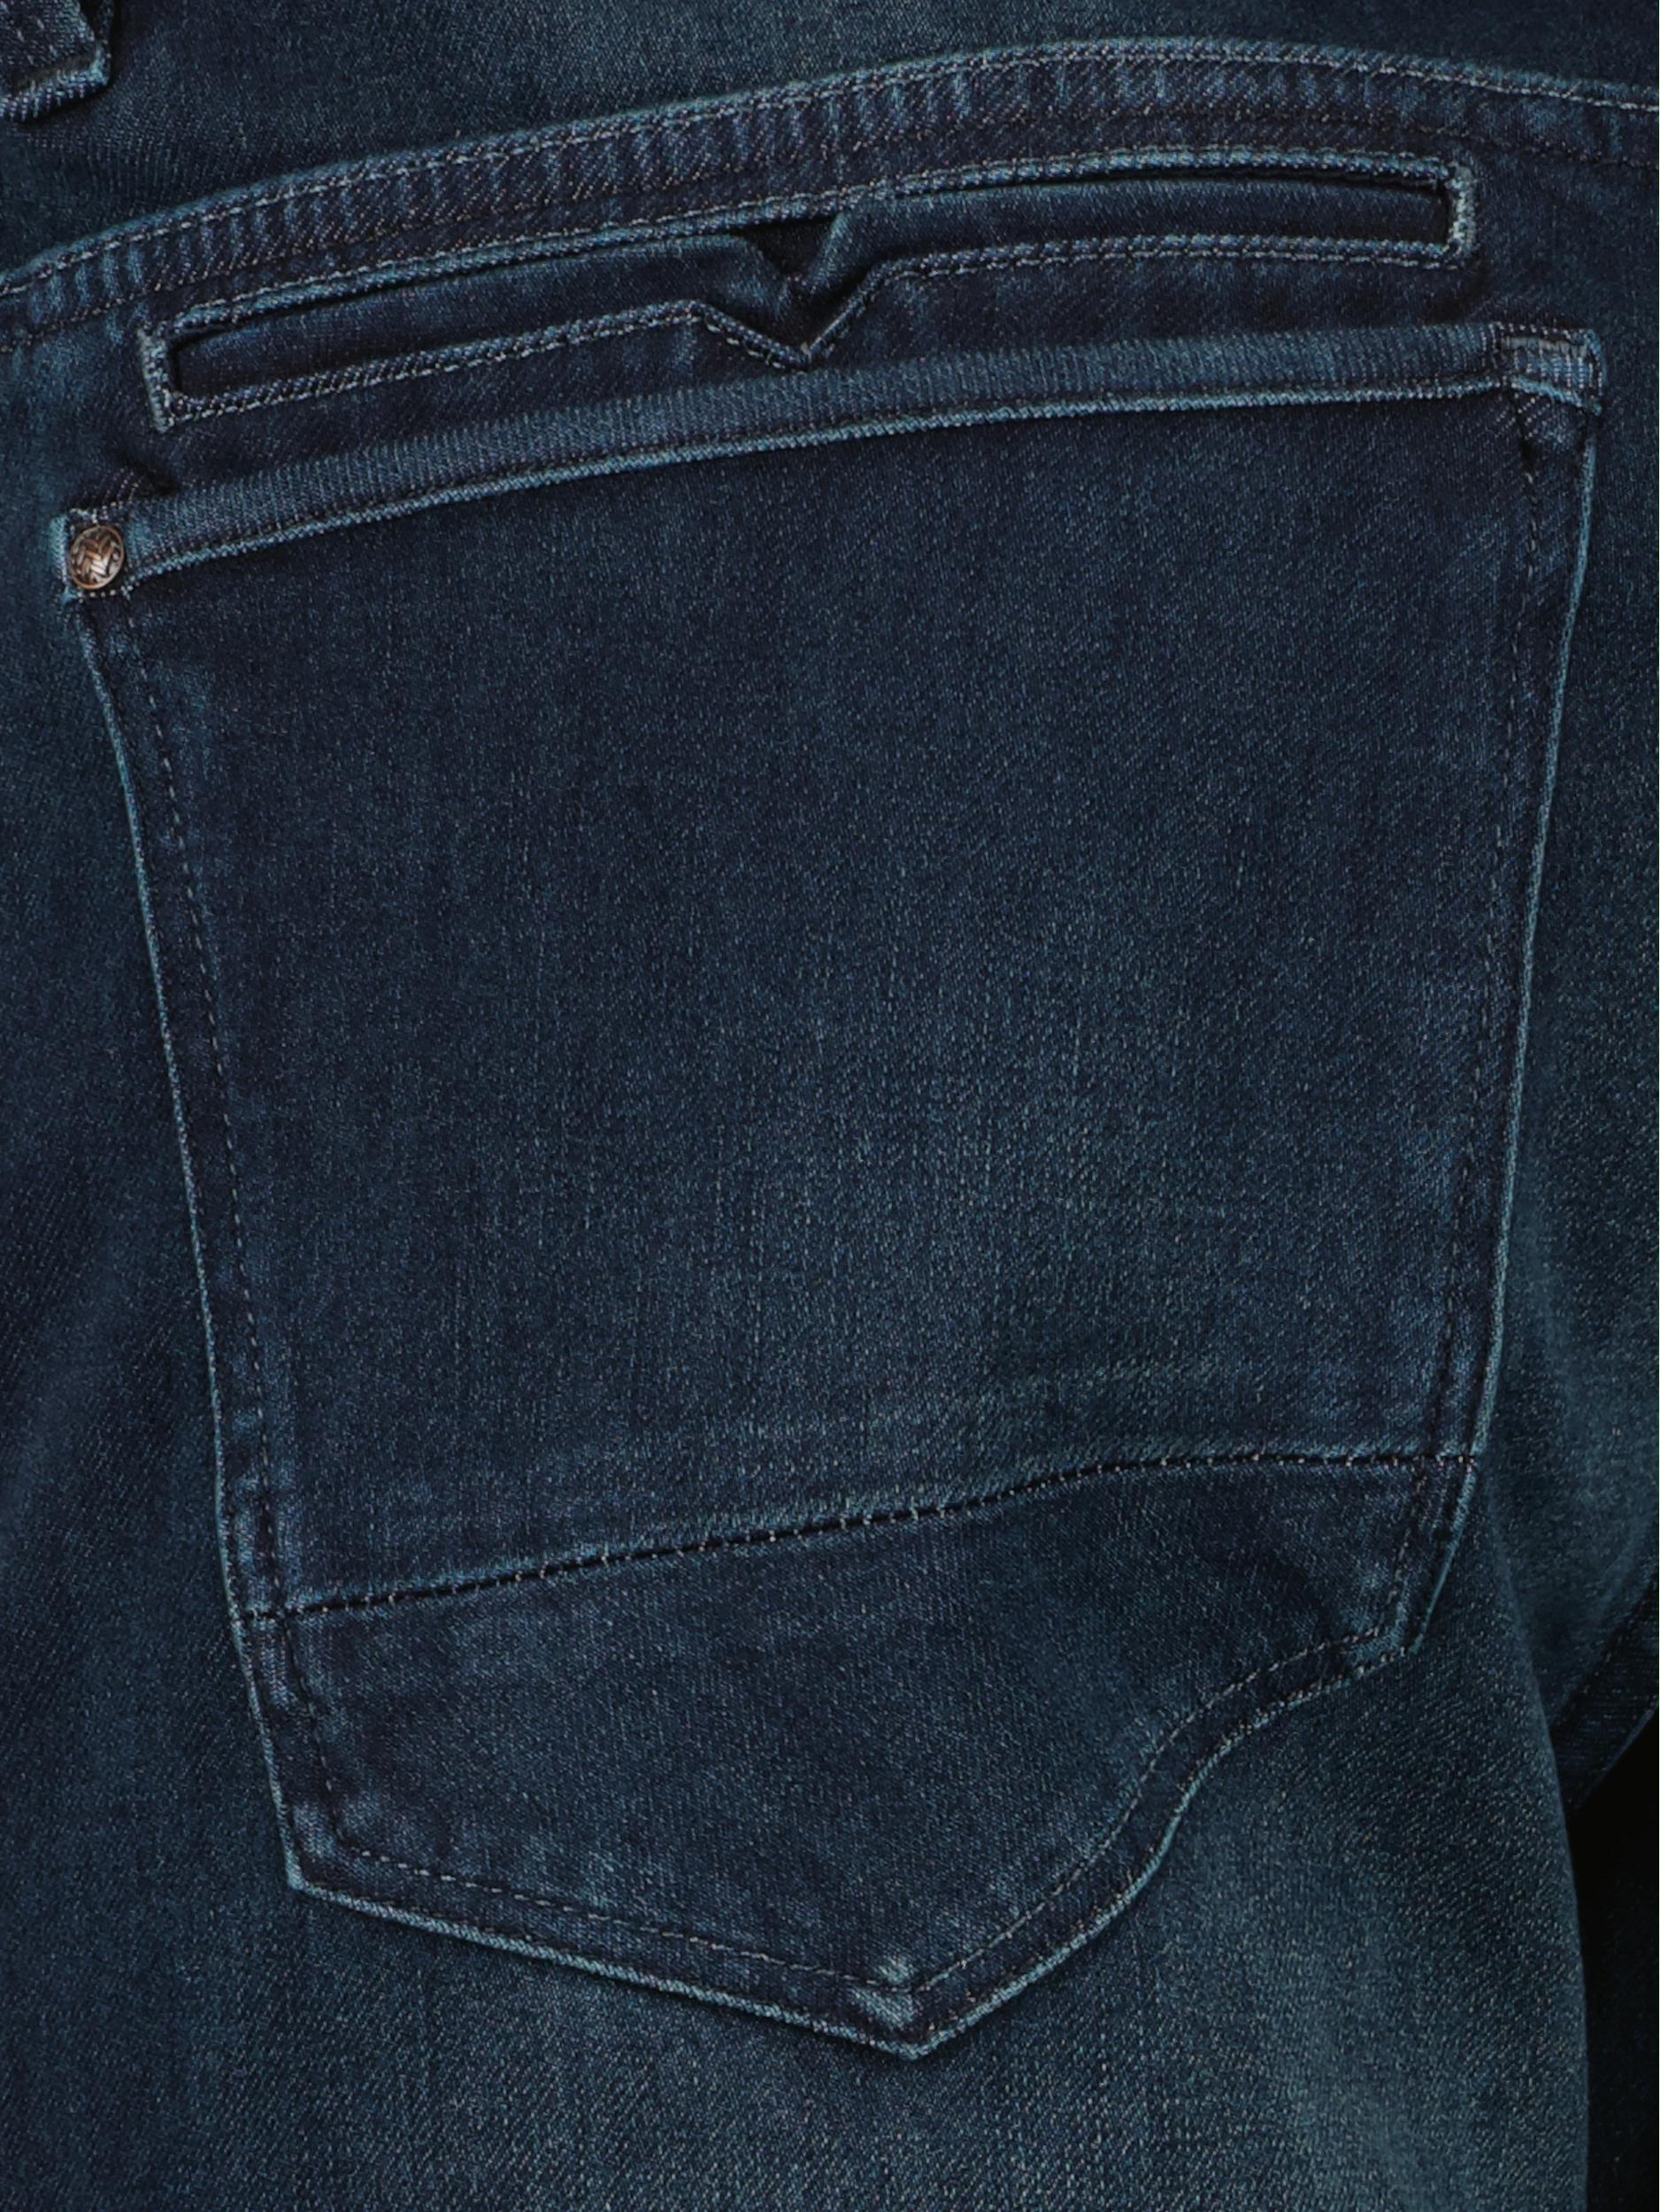 Vanguard 5-Pocket Jeans Blauw V850 RIDER BLUE NIGHT USED VTR850/BNU